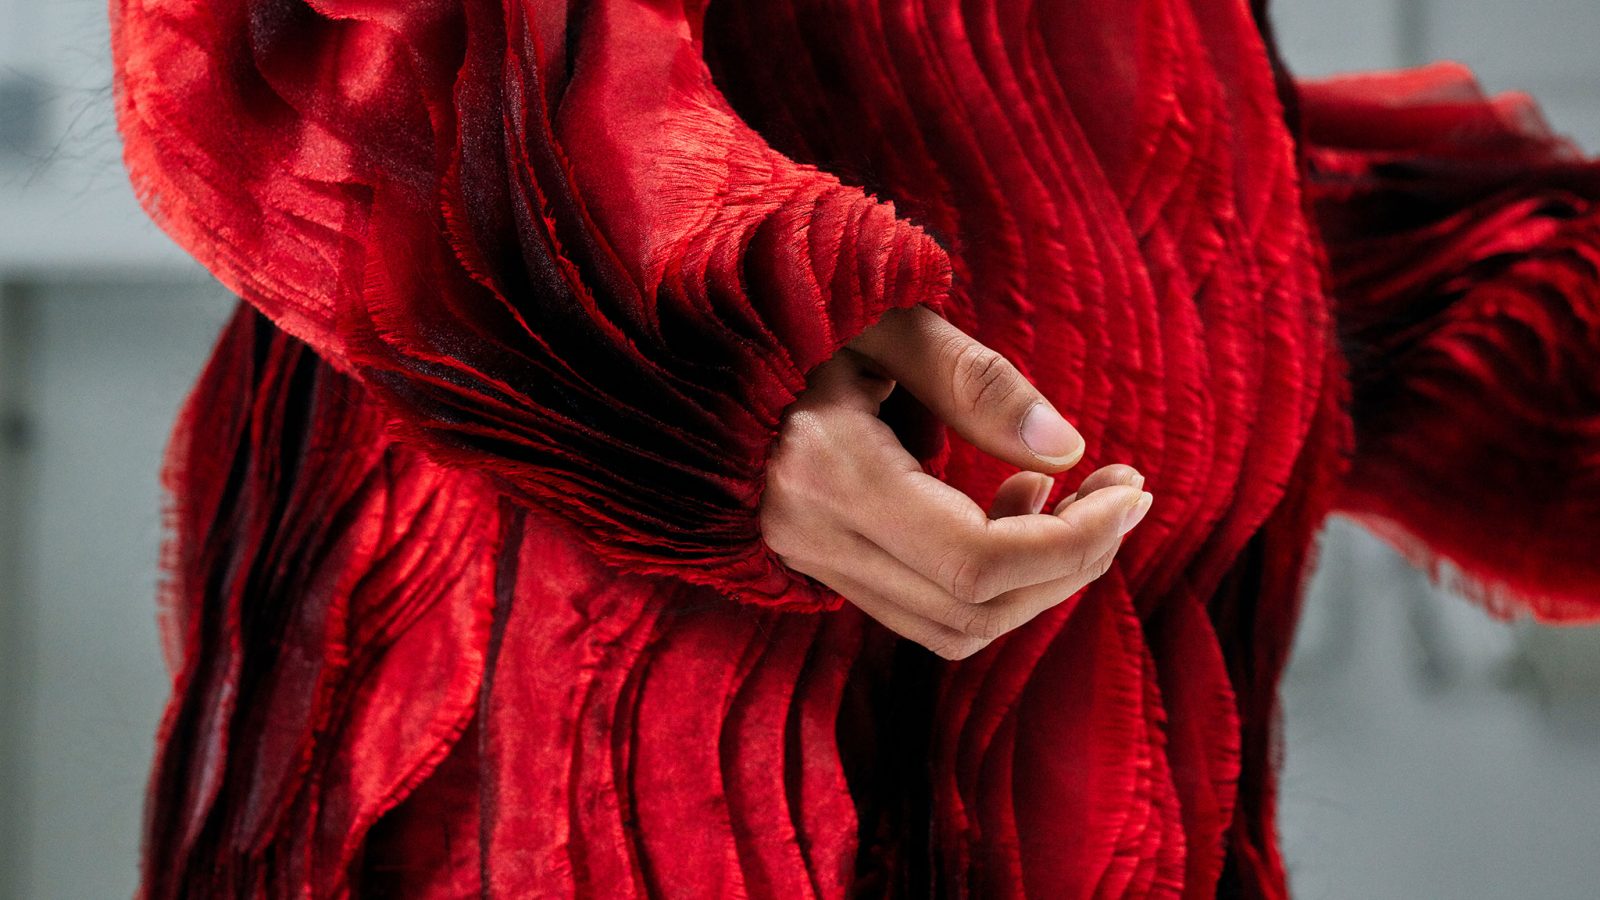 Ett rött plagg med långa ärmar och mängder av vertikala veck i en våglik struktur, skuggor och en kvinnas hand.